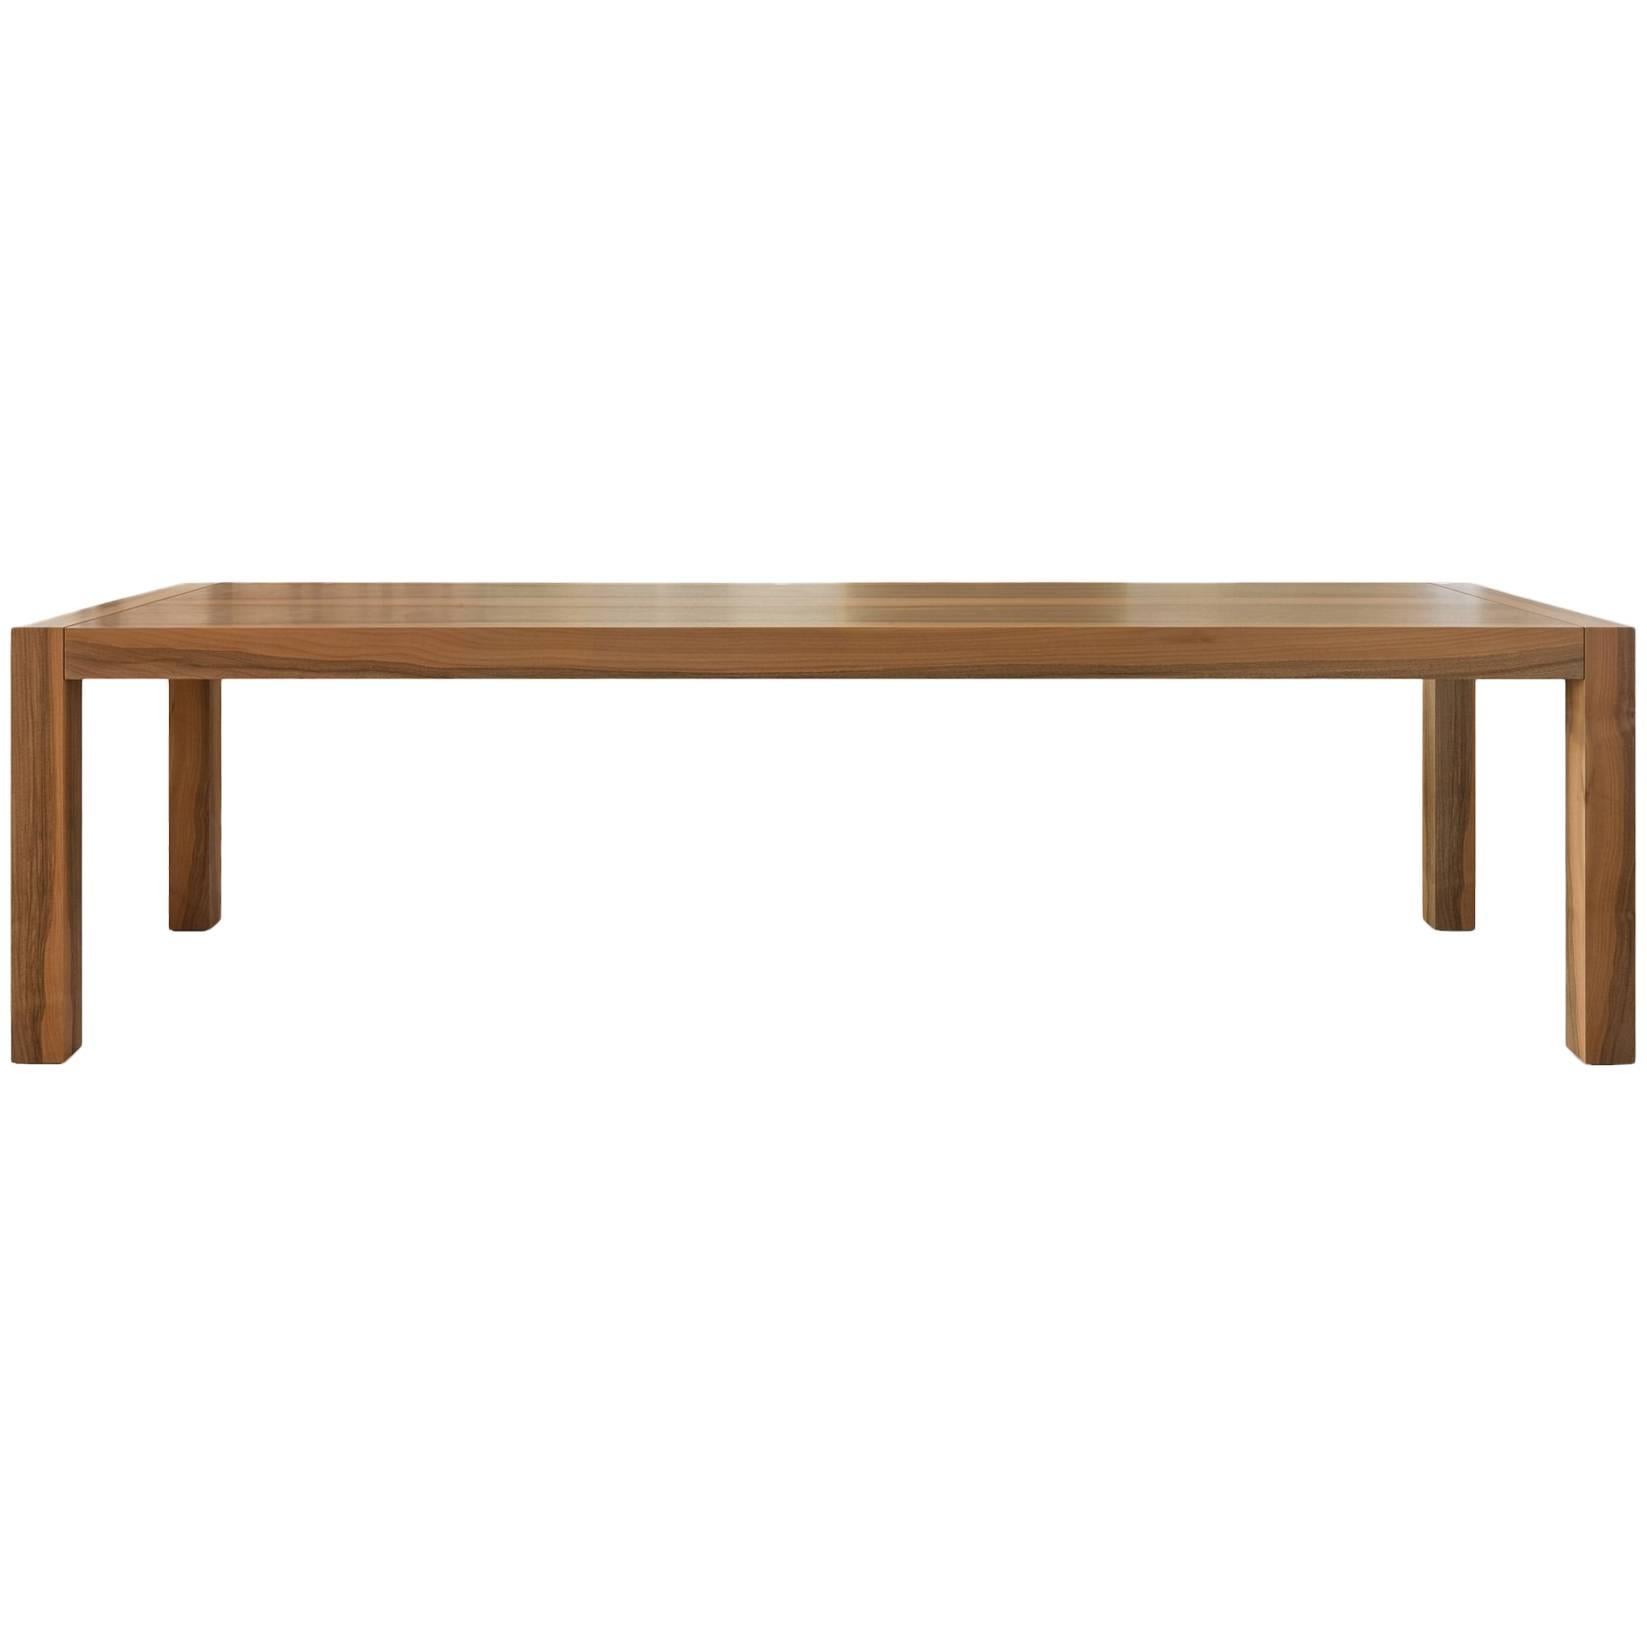 Table rectangulaire en bois « Kwaak » conçue par Stephane Lebrun pour Dessie